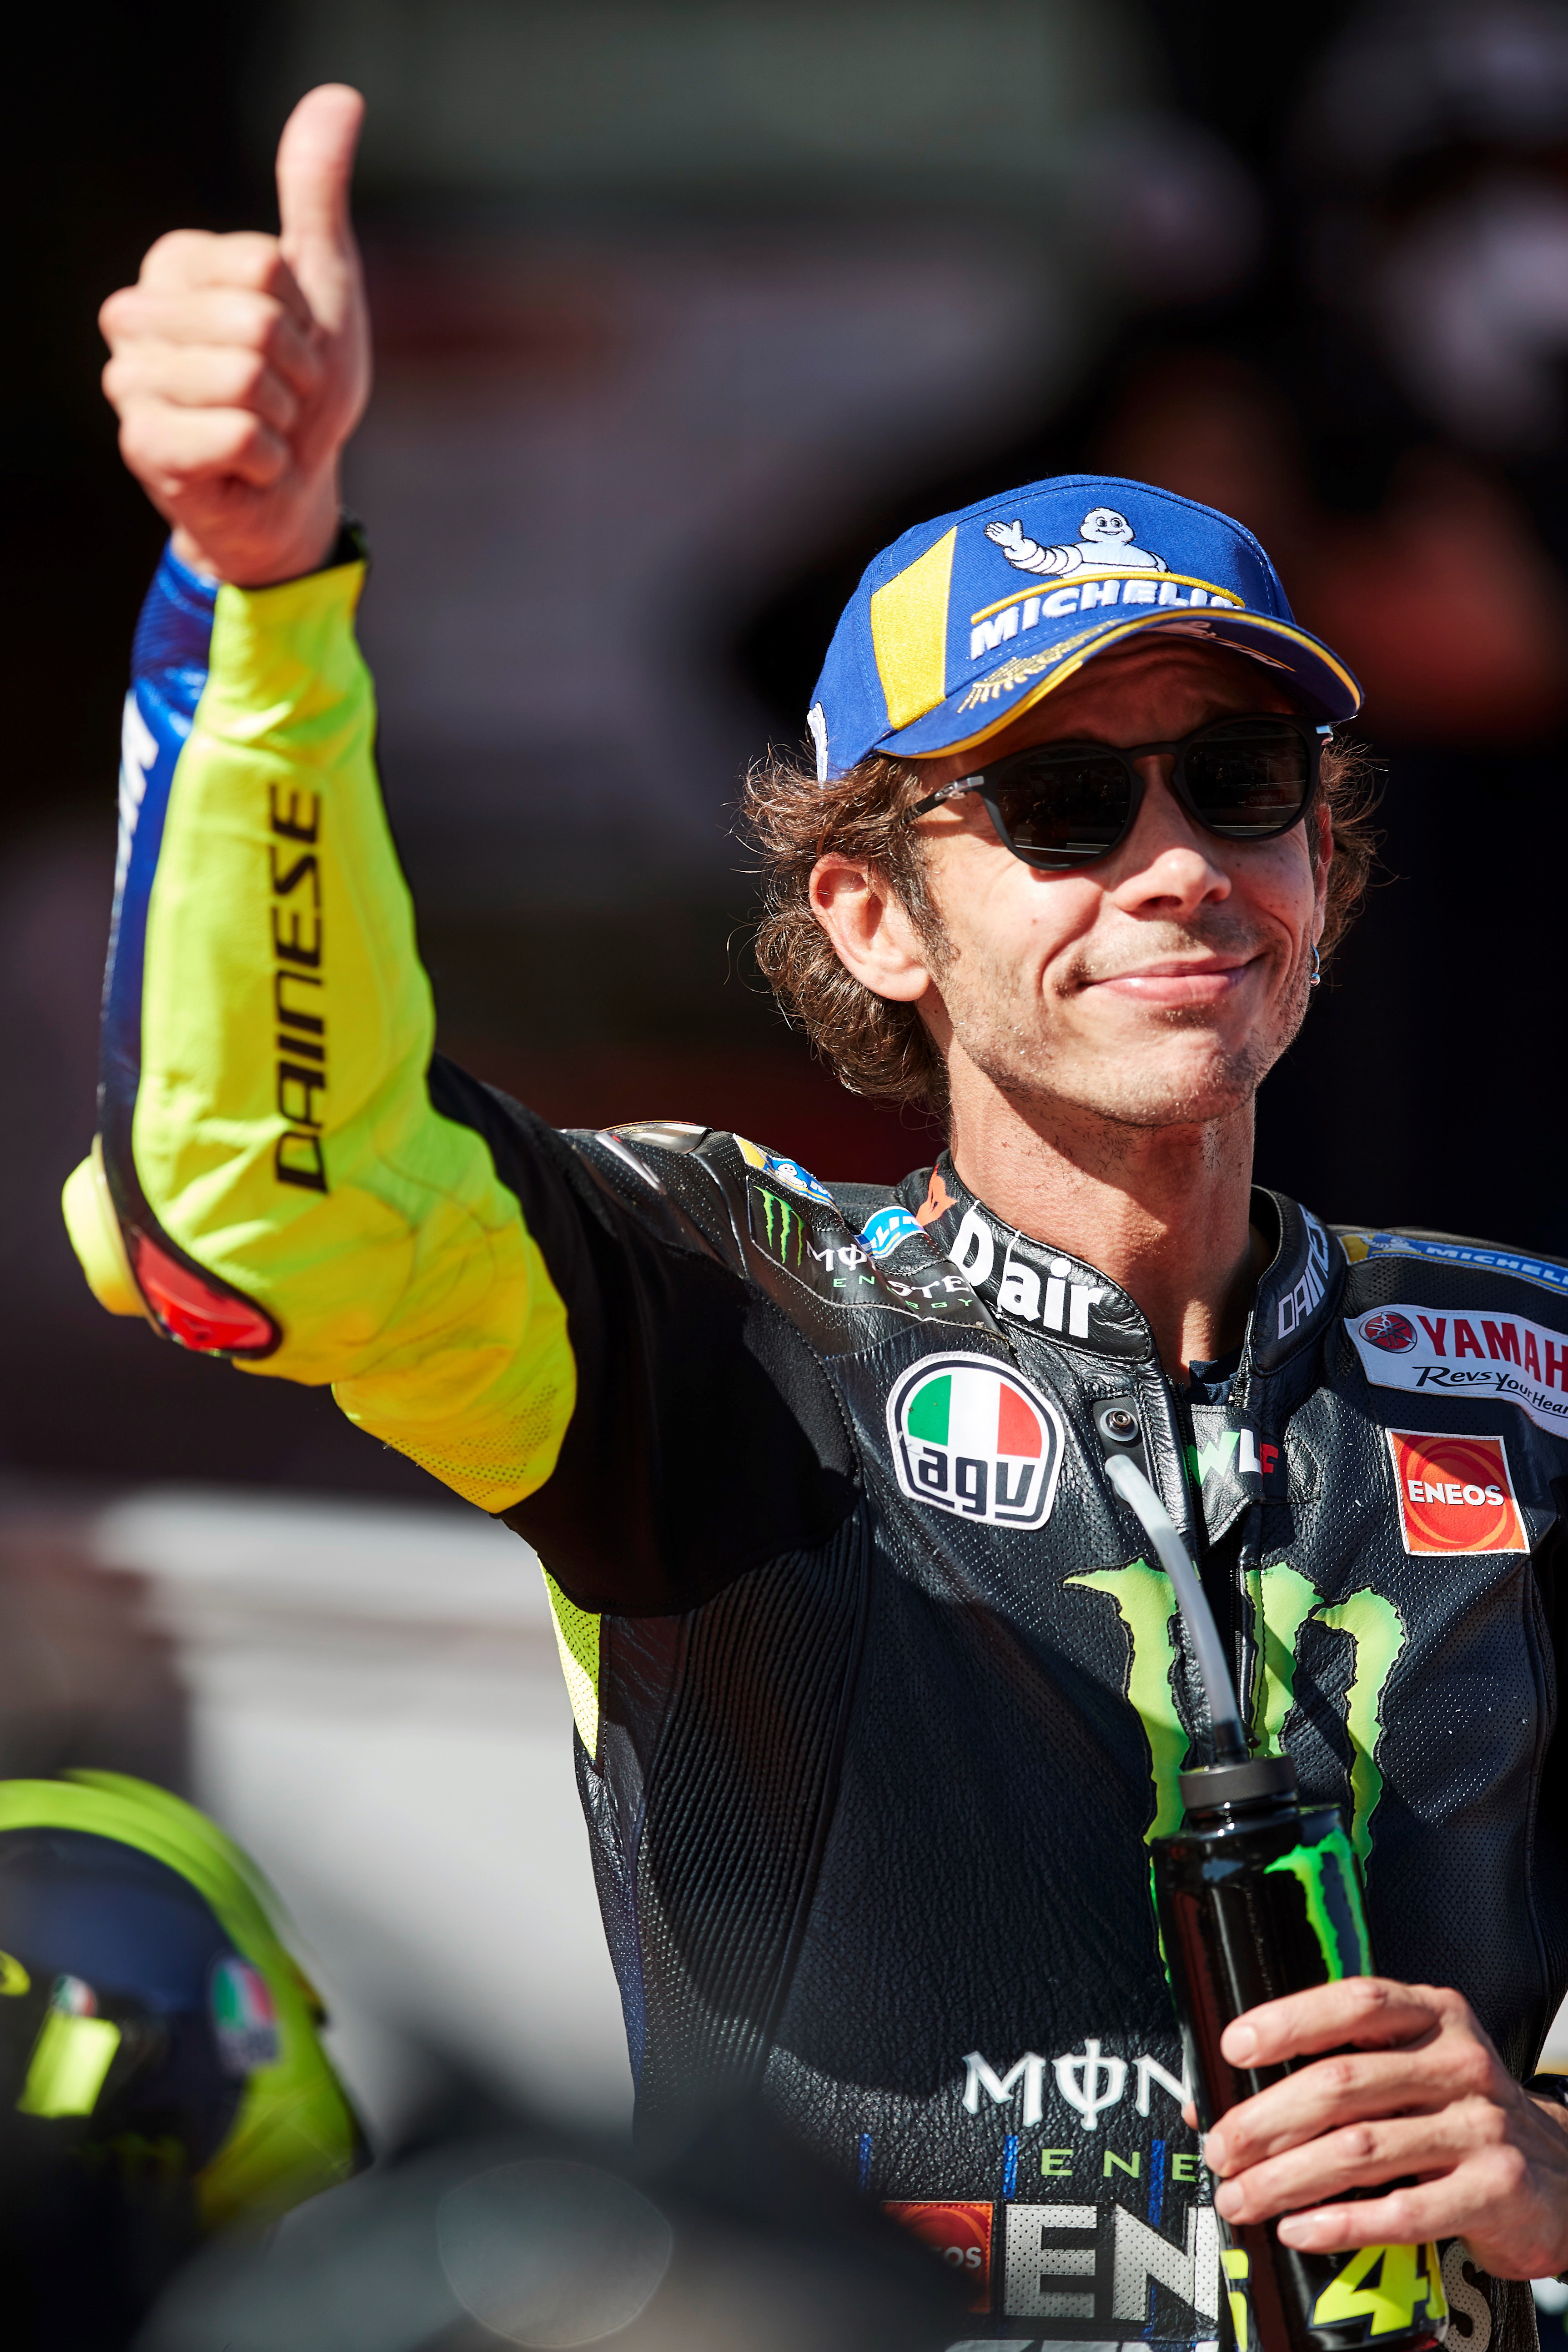 41岁的“MotoGP活化石”罗西宣布自己将在明年加盟国油野马哈SRT队，继续自己的职业生涯，摩托车迷们又能继续目睹传奇的风采多一年。（欧新社照片）

